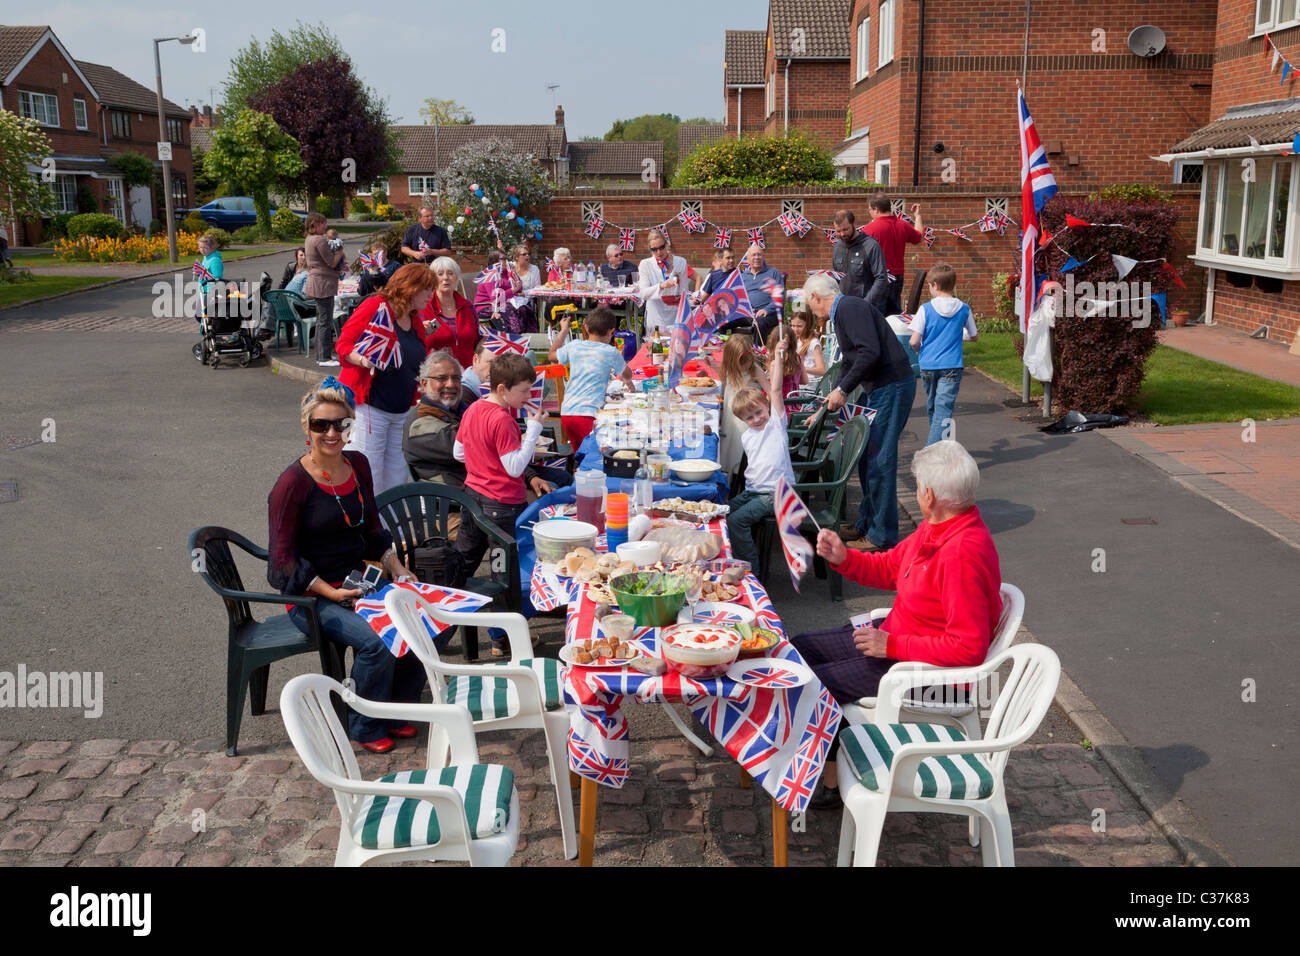 Straßenfest anlässlich die königliche Hochzeit zwischen Prinz William und Catherine Kate Middleton Nottingham England GB UK Stockfoto